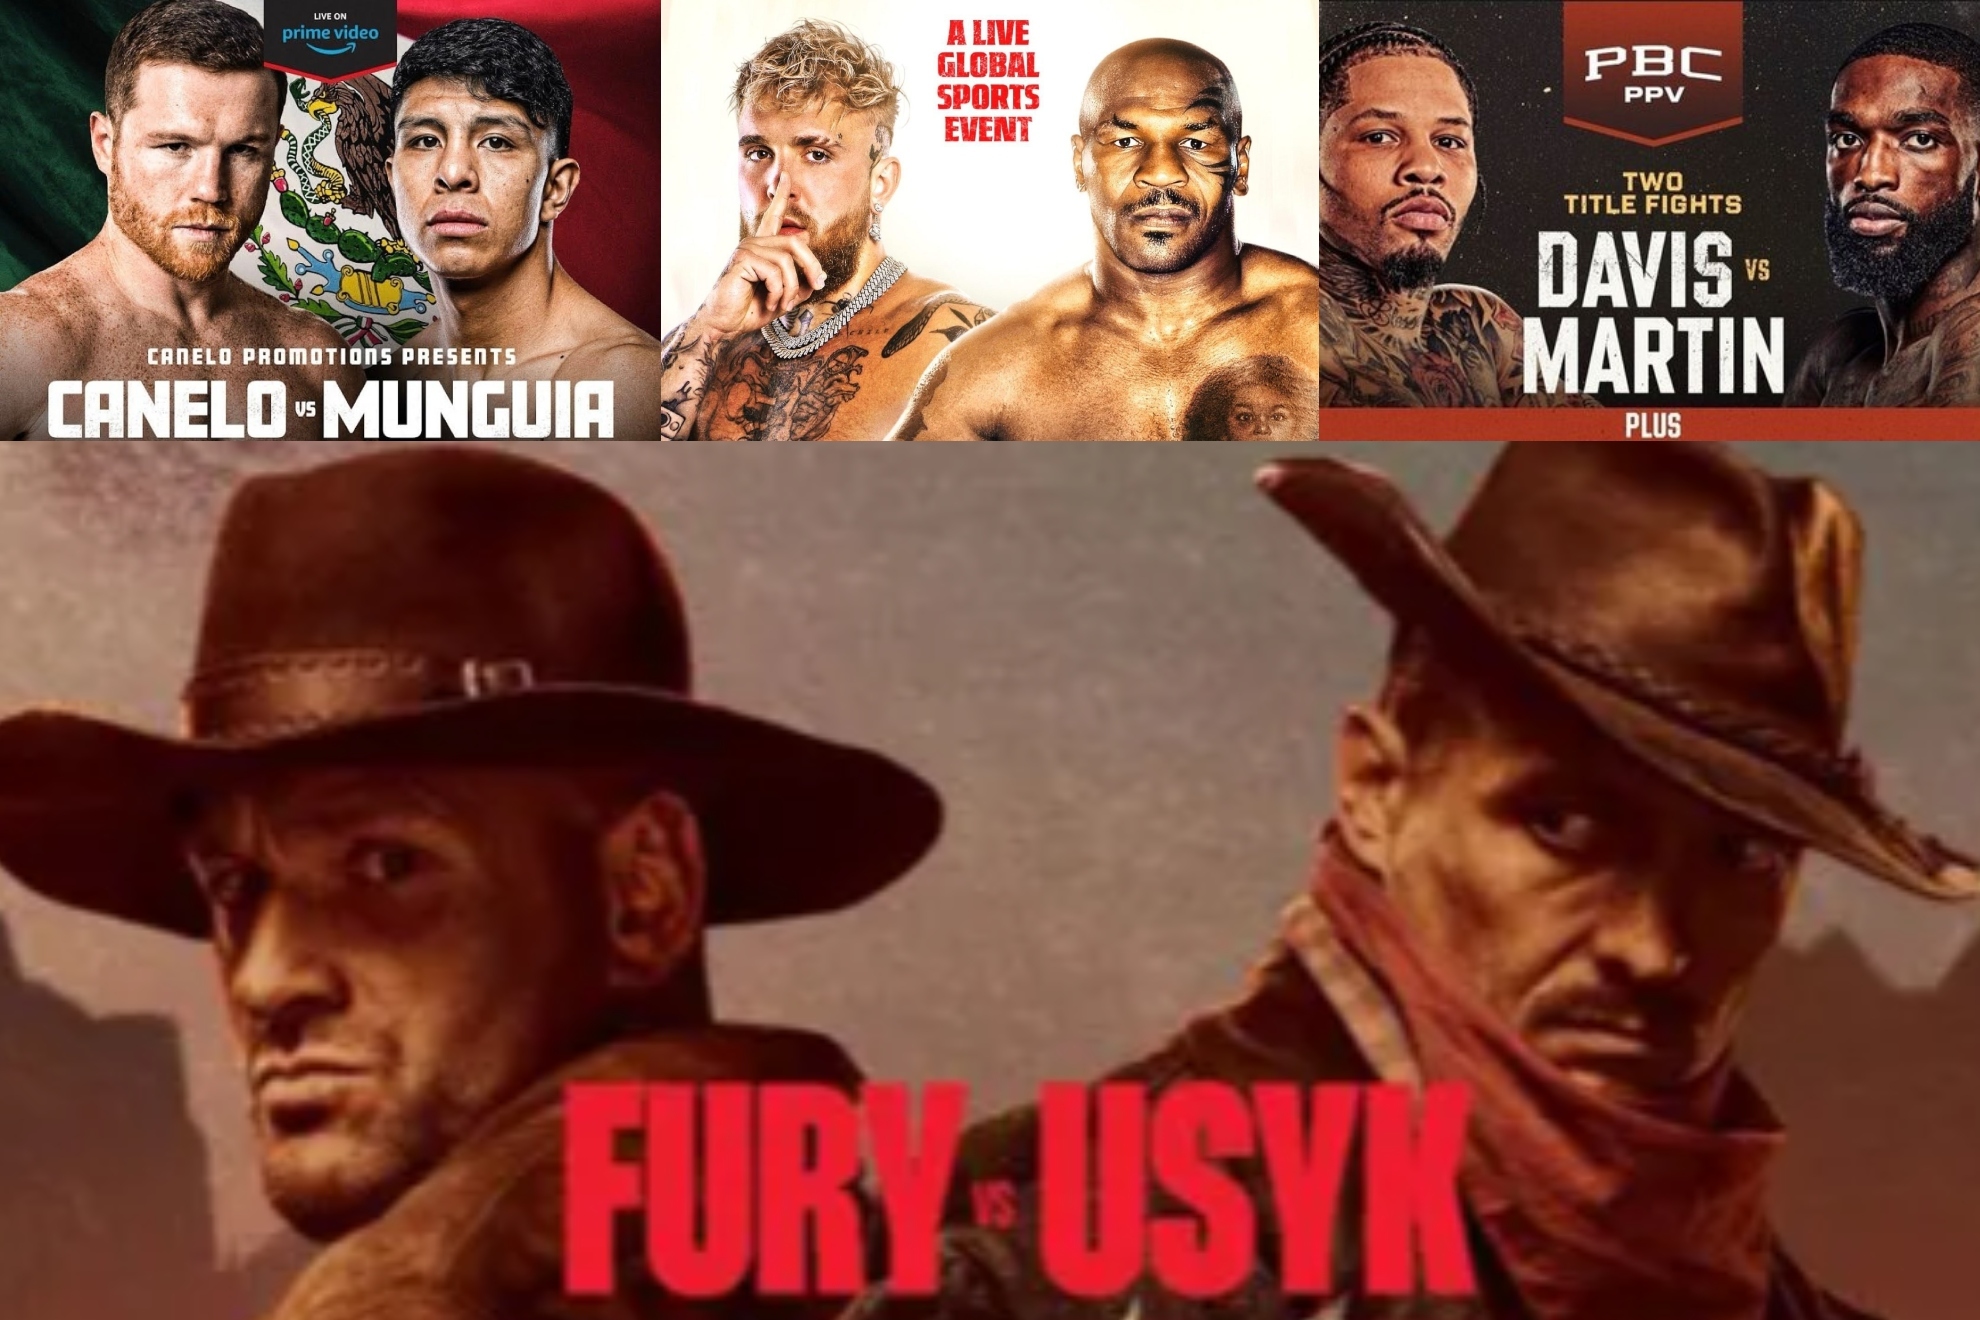 El calendario del boxeo que viene es dinamita pura: Fury vs. Usyk, Canelo, Tyson, Gervonta, Crawford, Inoue...